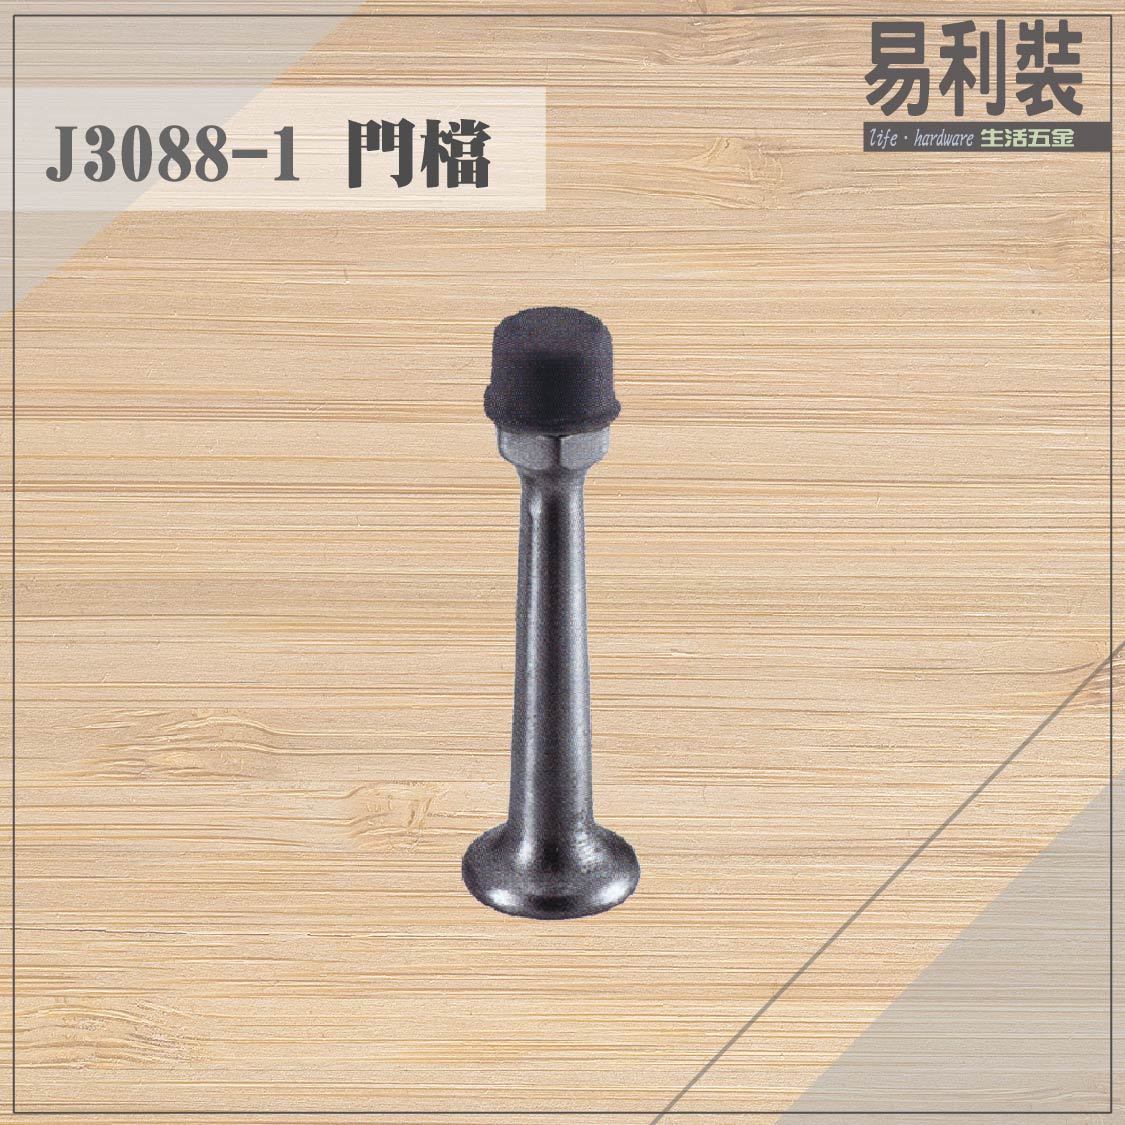 【 EASYCAN】J3088-1 不鏽鋼門檔 易利裝生活五金 浴室 廚房 房間